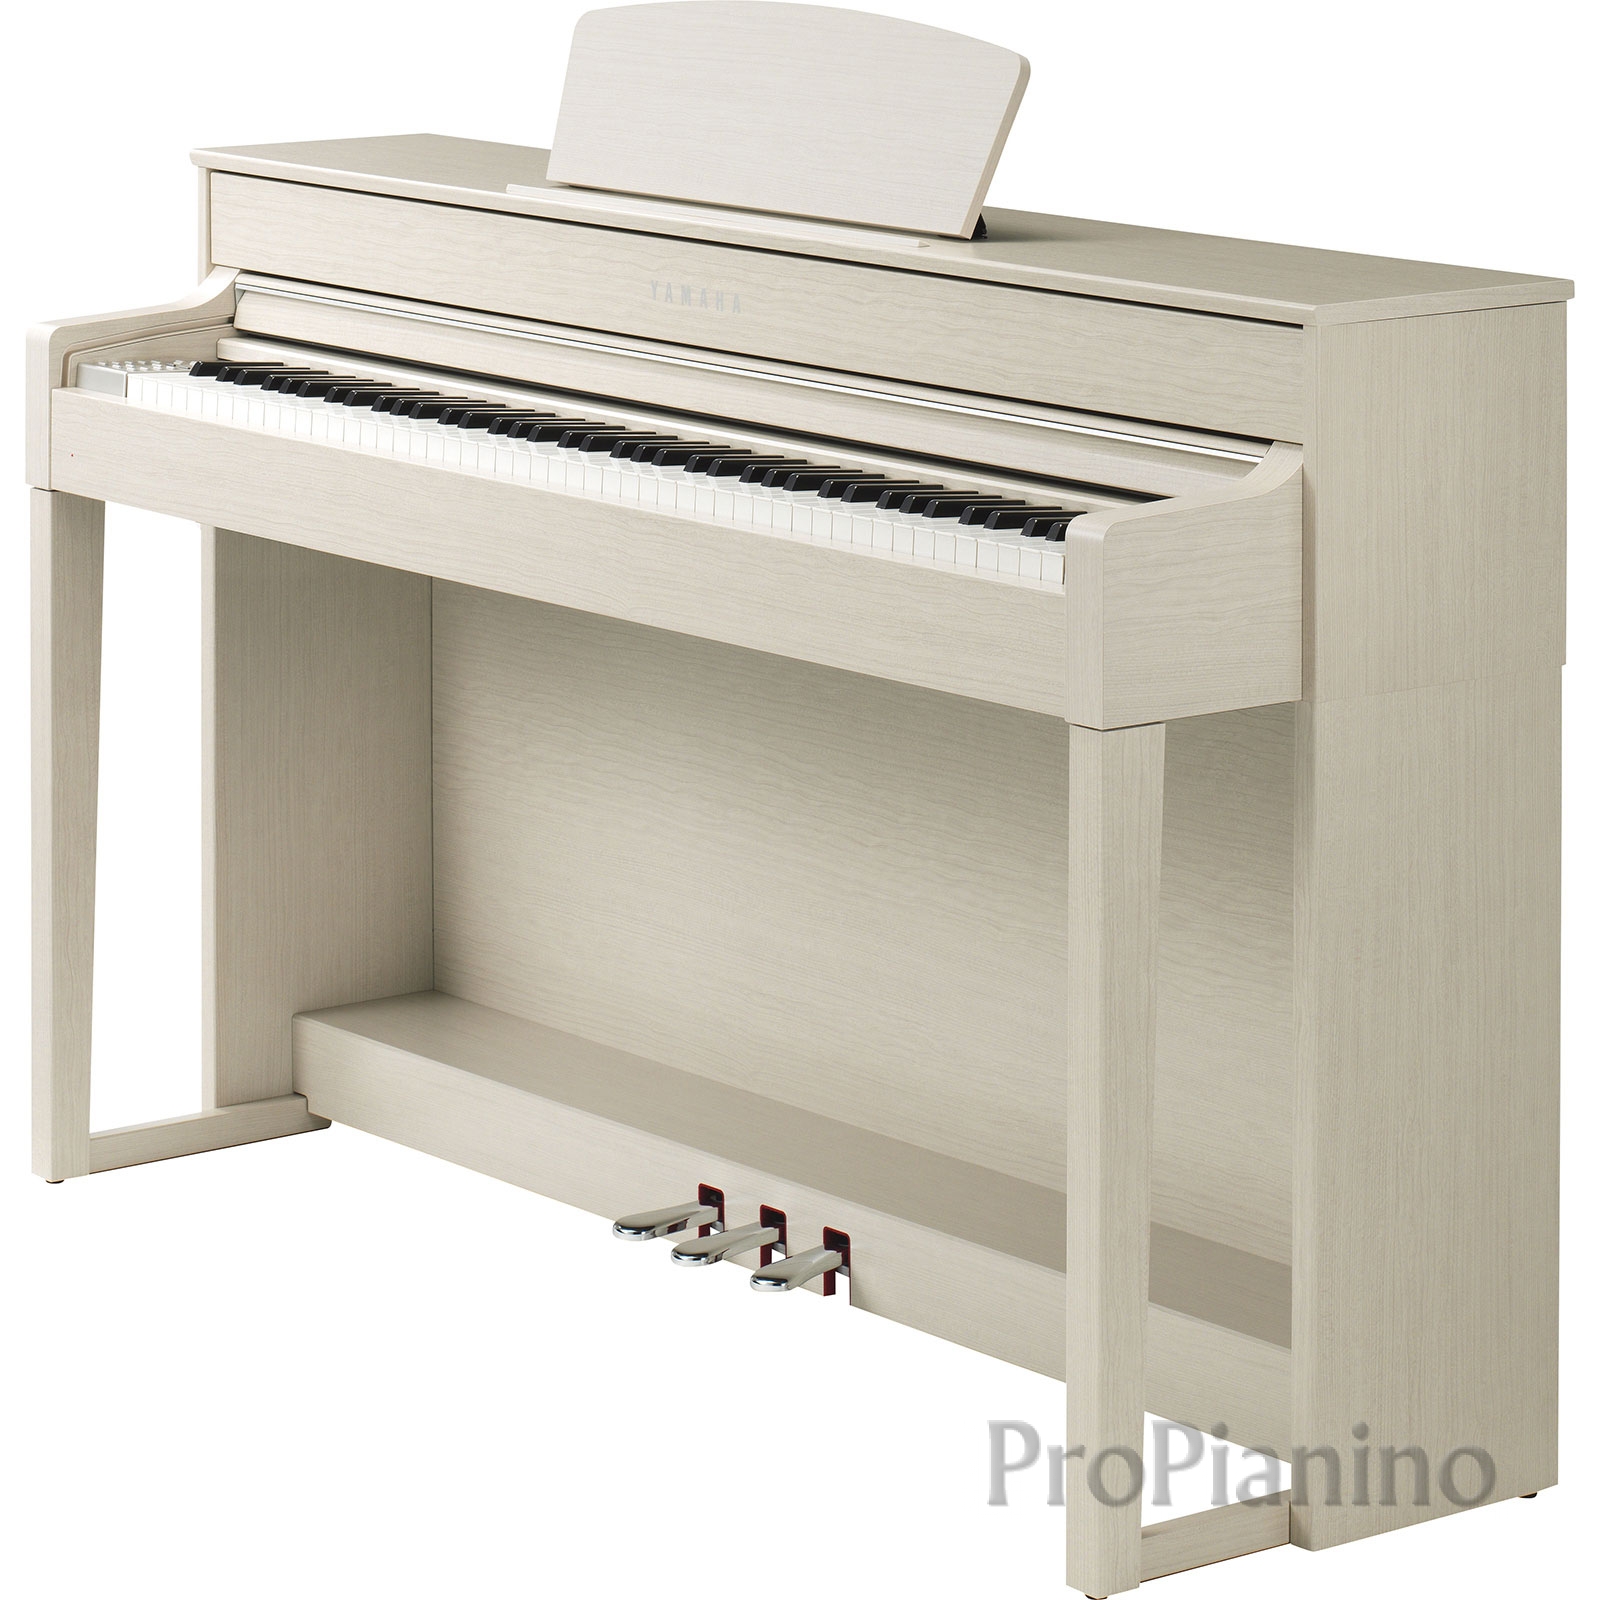 Пианино Yamaha clp 535 вид спереди